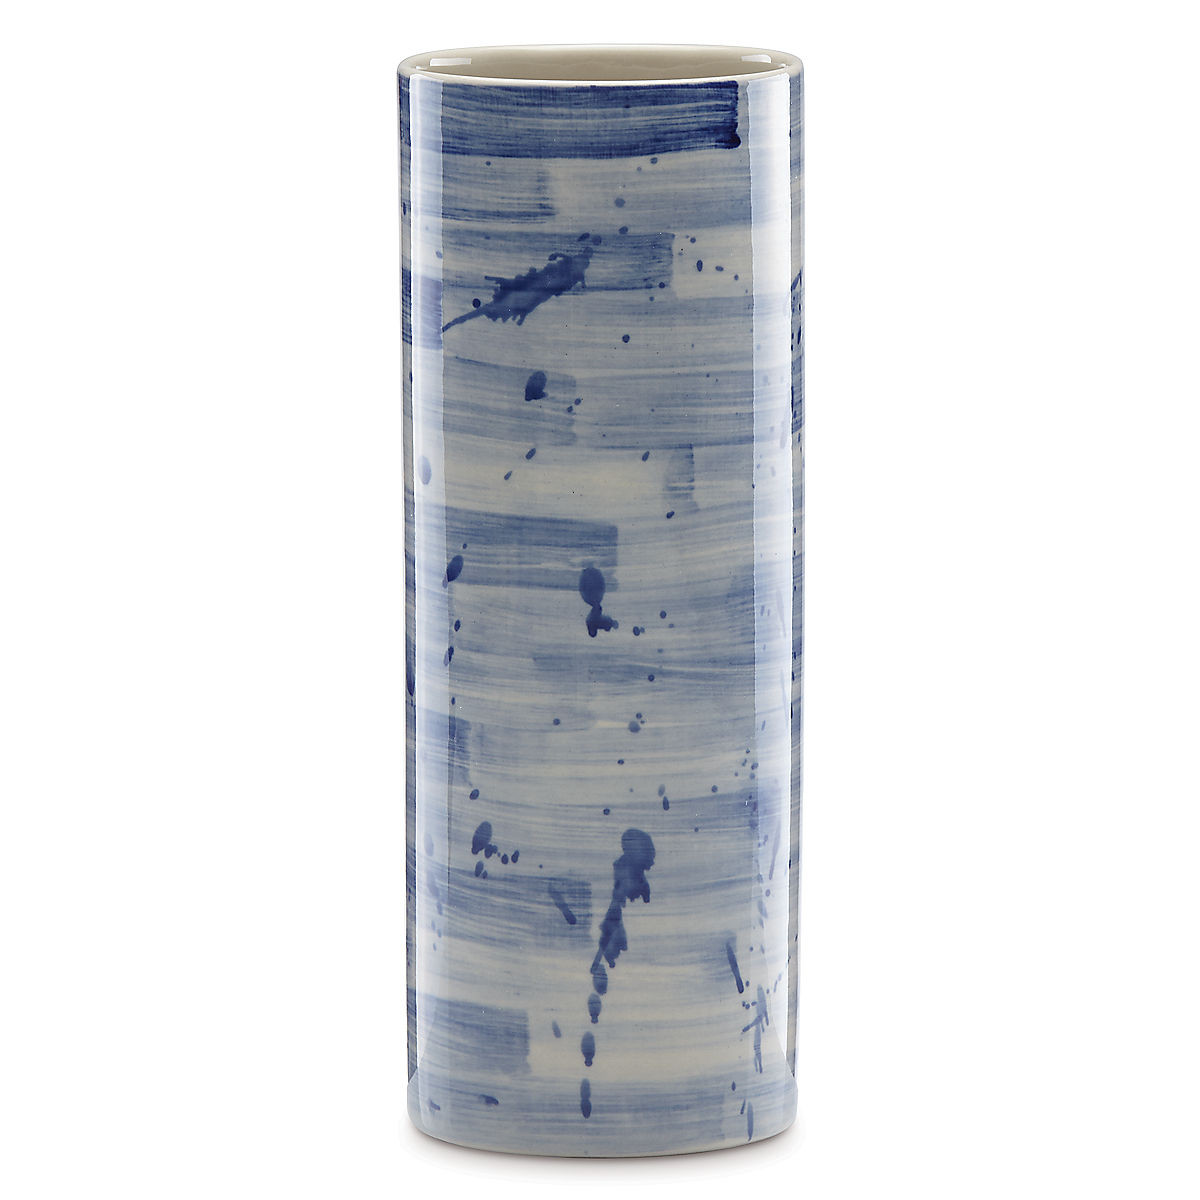 Lenox Vase Patterns Of Painted Indigoa¢ Stripe Cylinder Vase Wedding Anniversary Regarding Painted Indigo Stripe Cylinder Vase